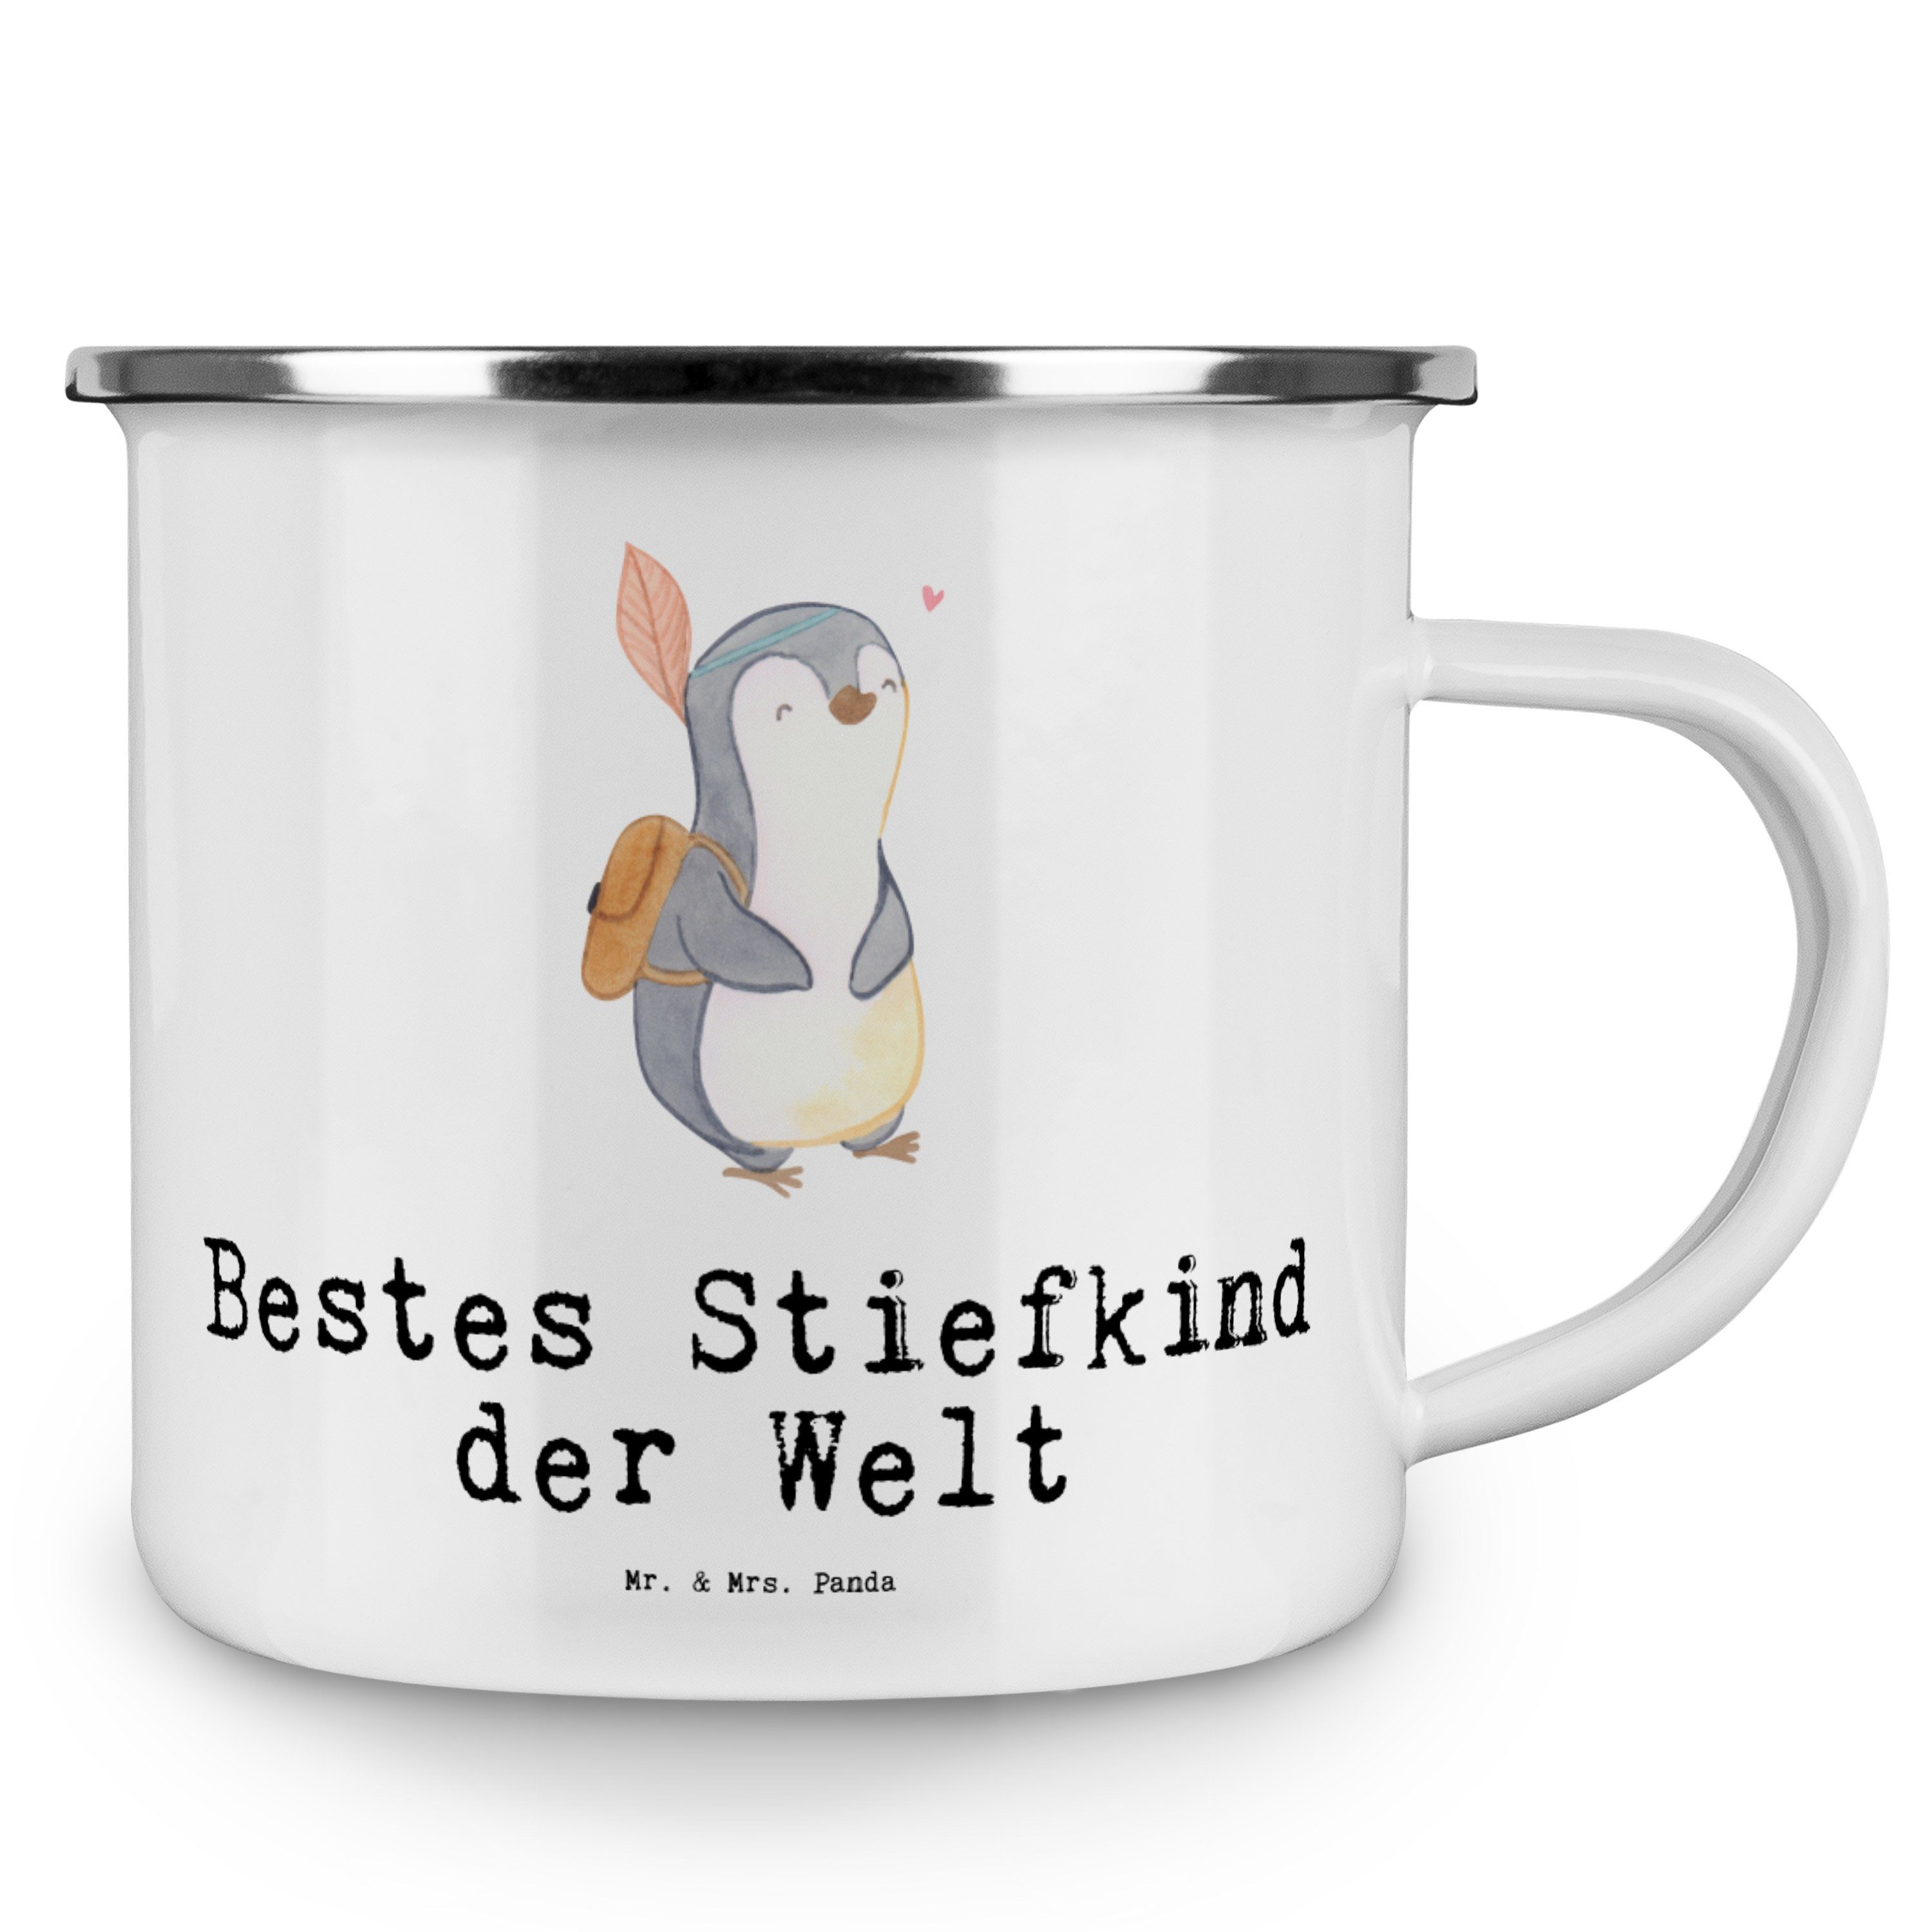 Mr. & Mrs. Panda der Stiefkind Outdoor Bestes T, Emaille Becher Pinguin - Welt Geschenk, Taufe, - Weiß